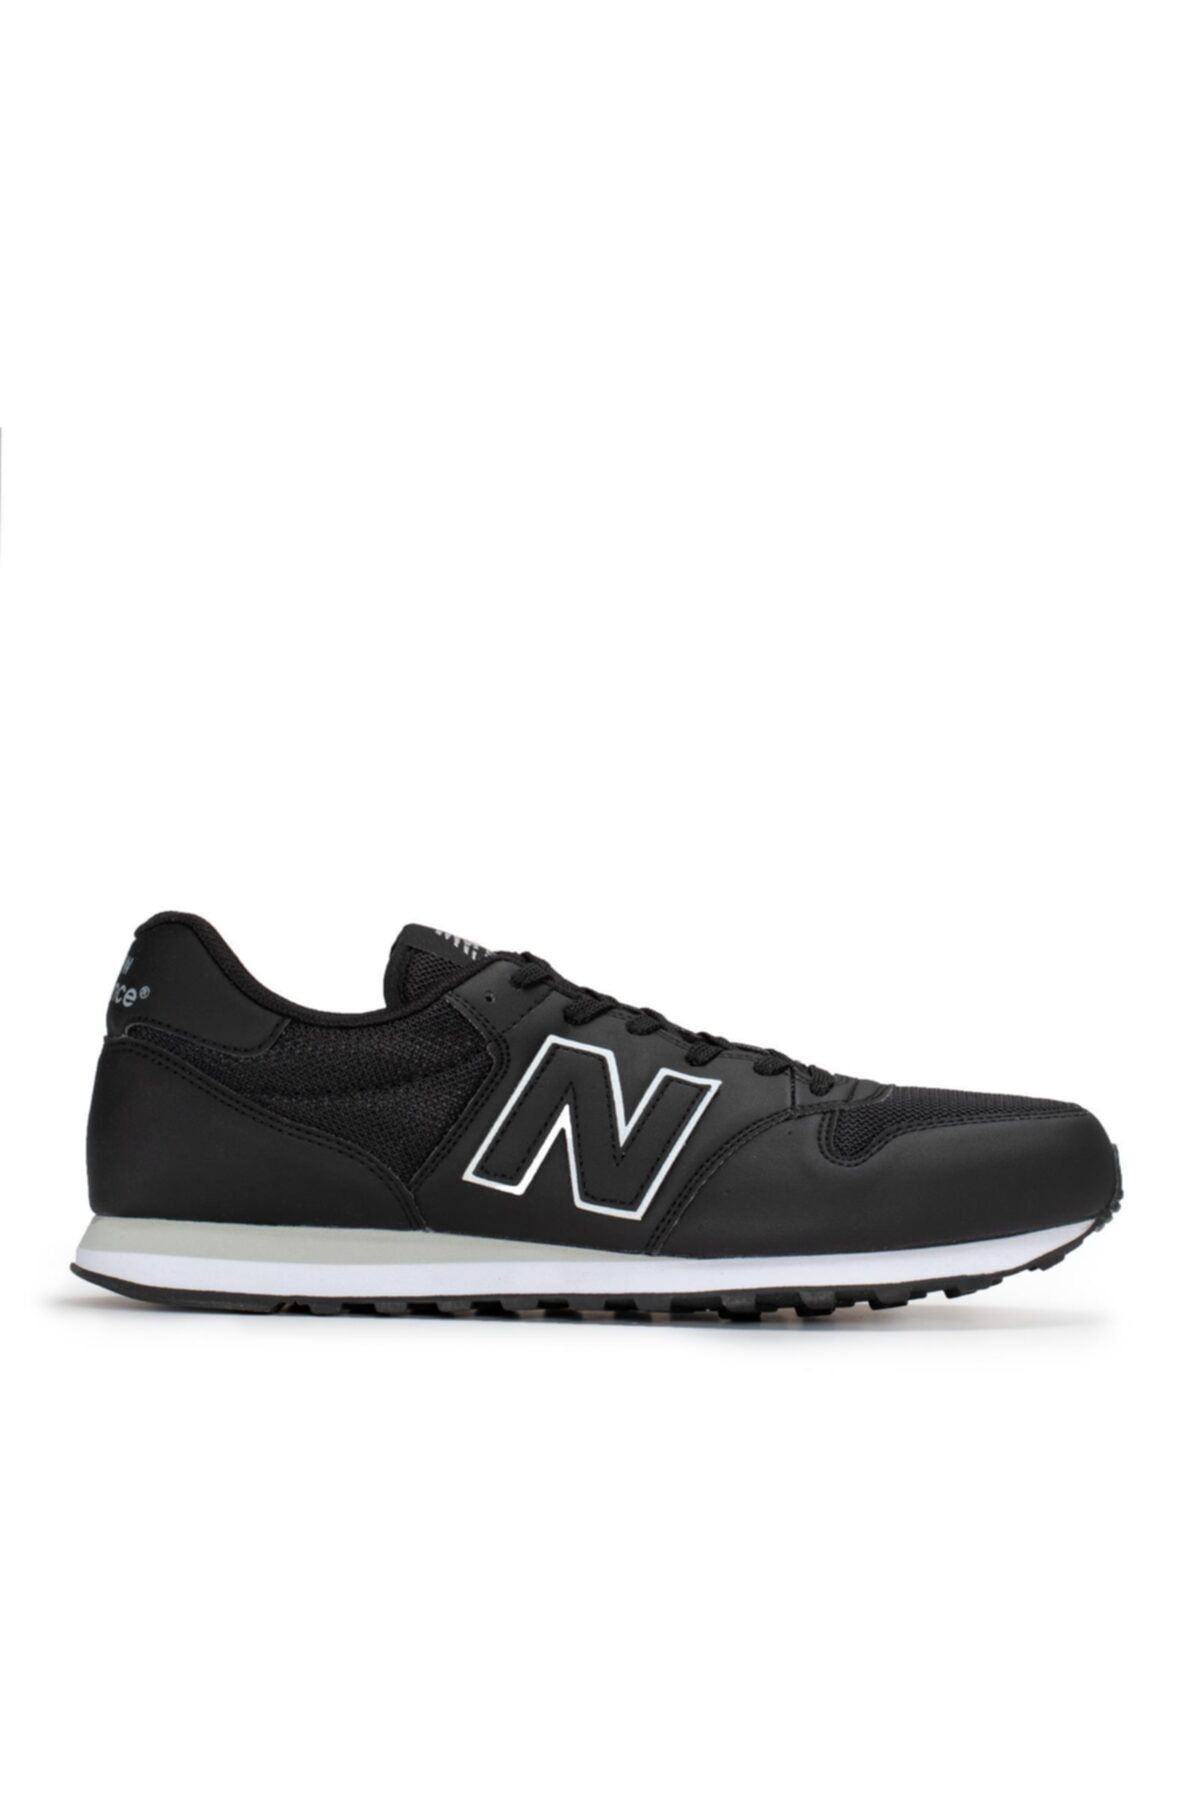 New Balance Erkek Yürüyüş Ayakkabısı - 500 - Gm500nbl